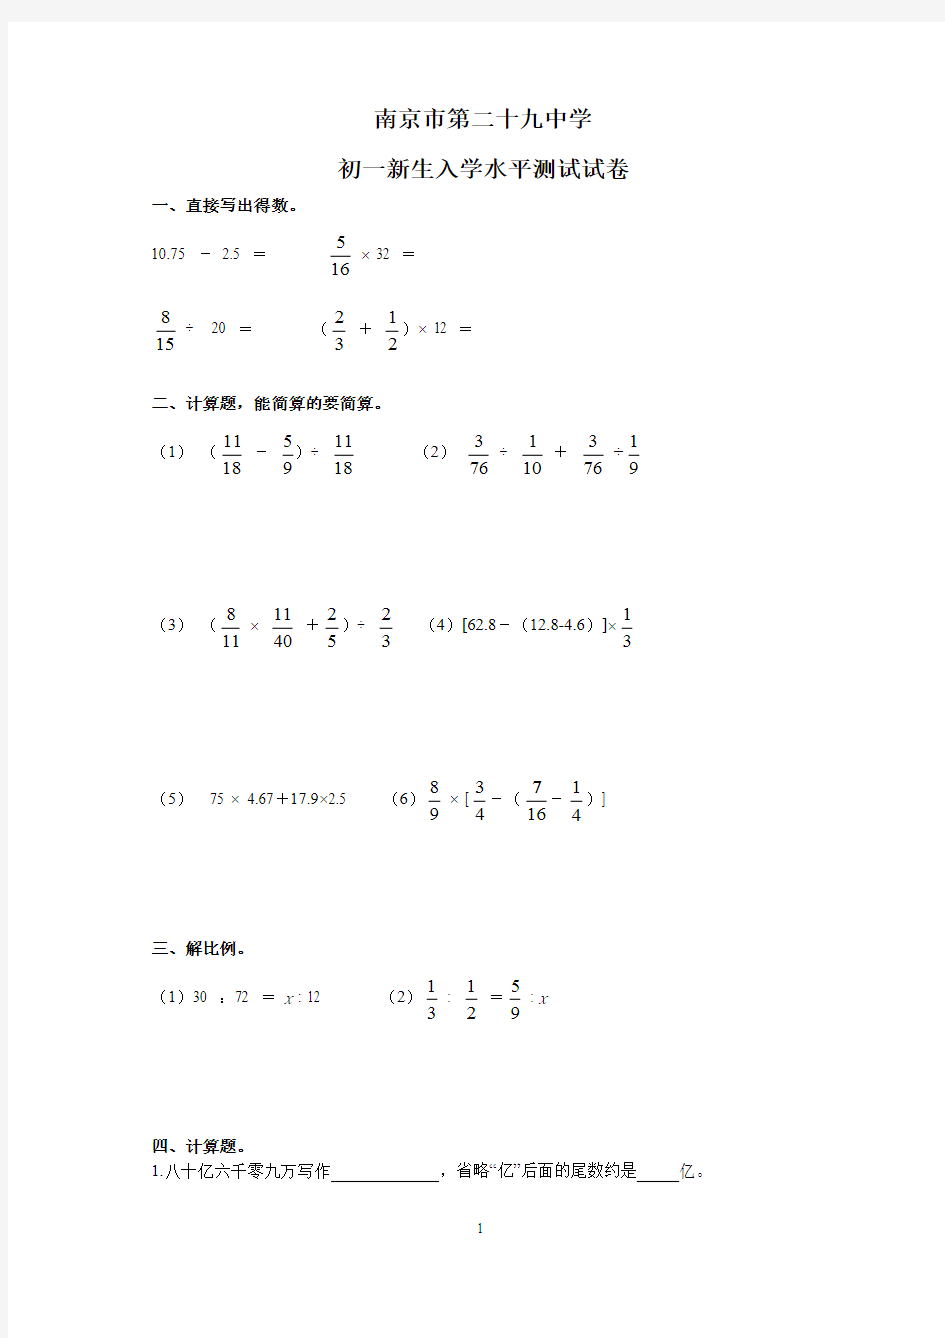 南京市二十九中学新初一生入学分班数学测试卷与答案